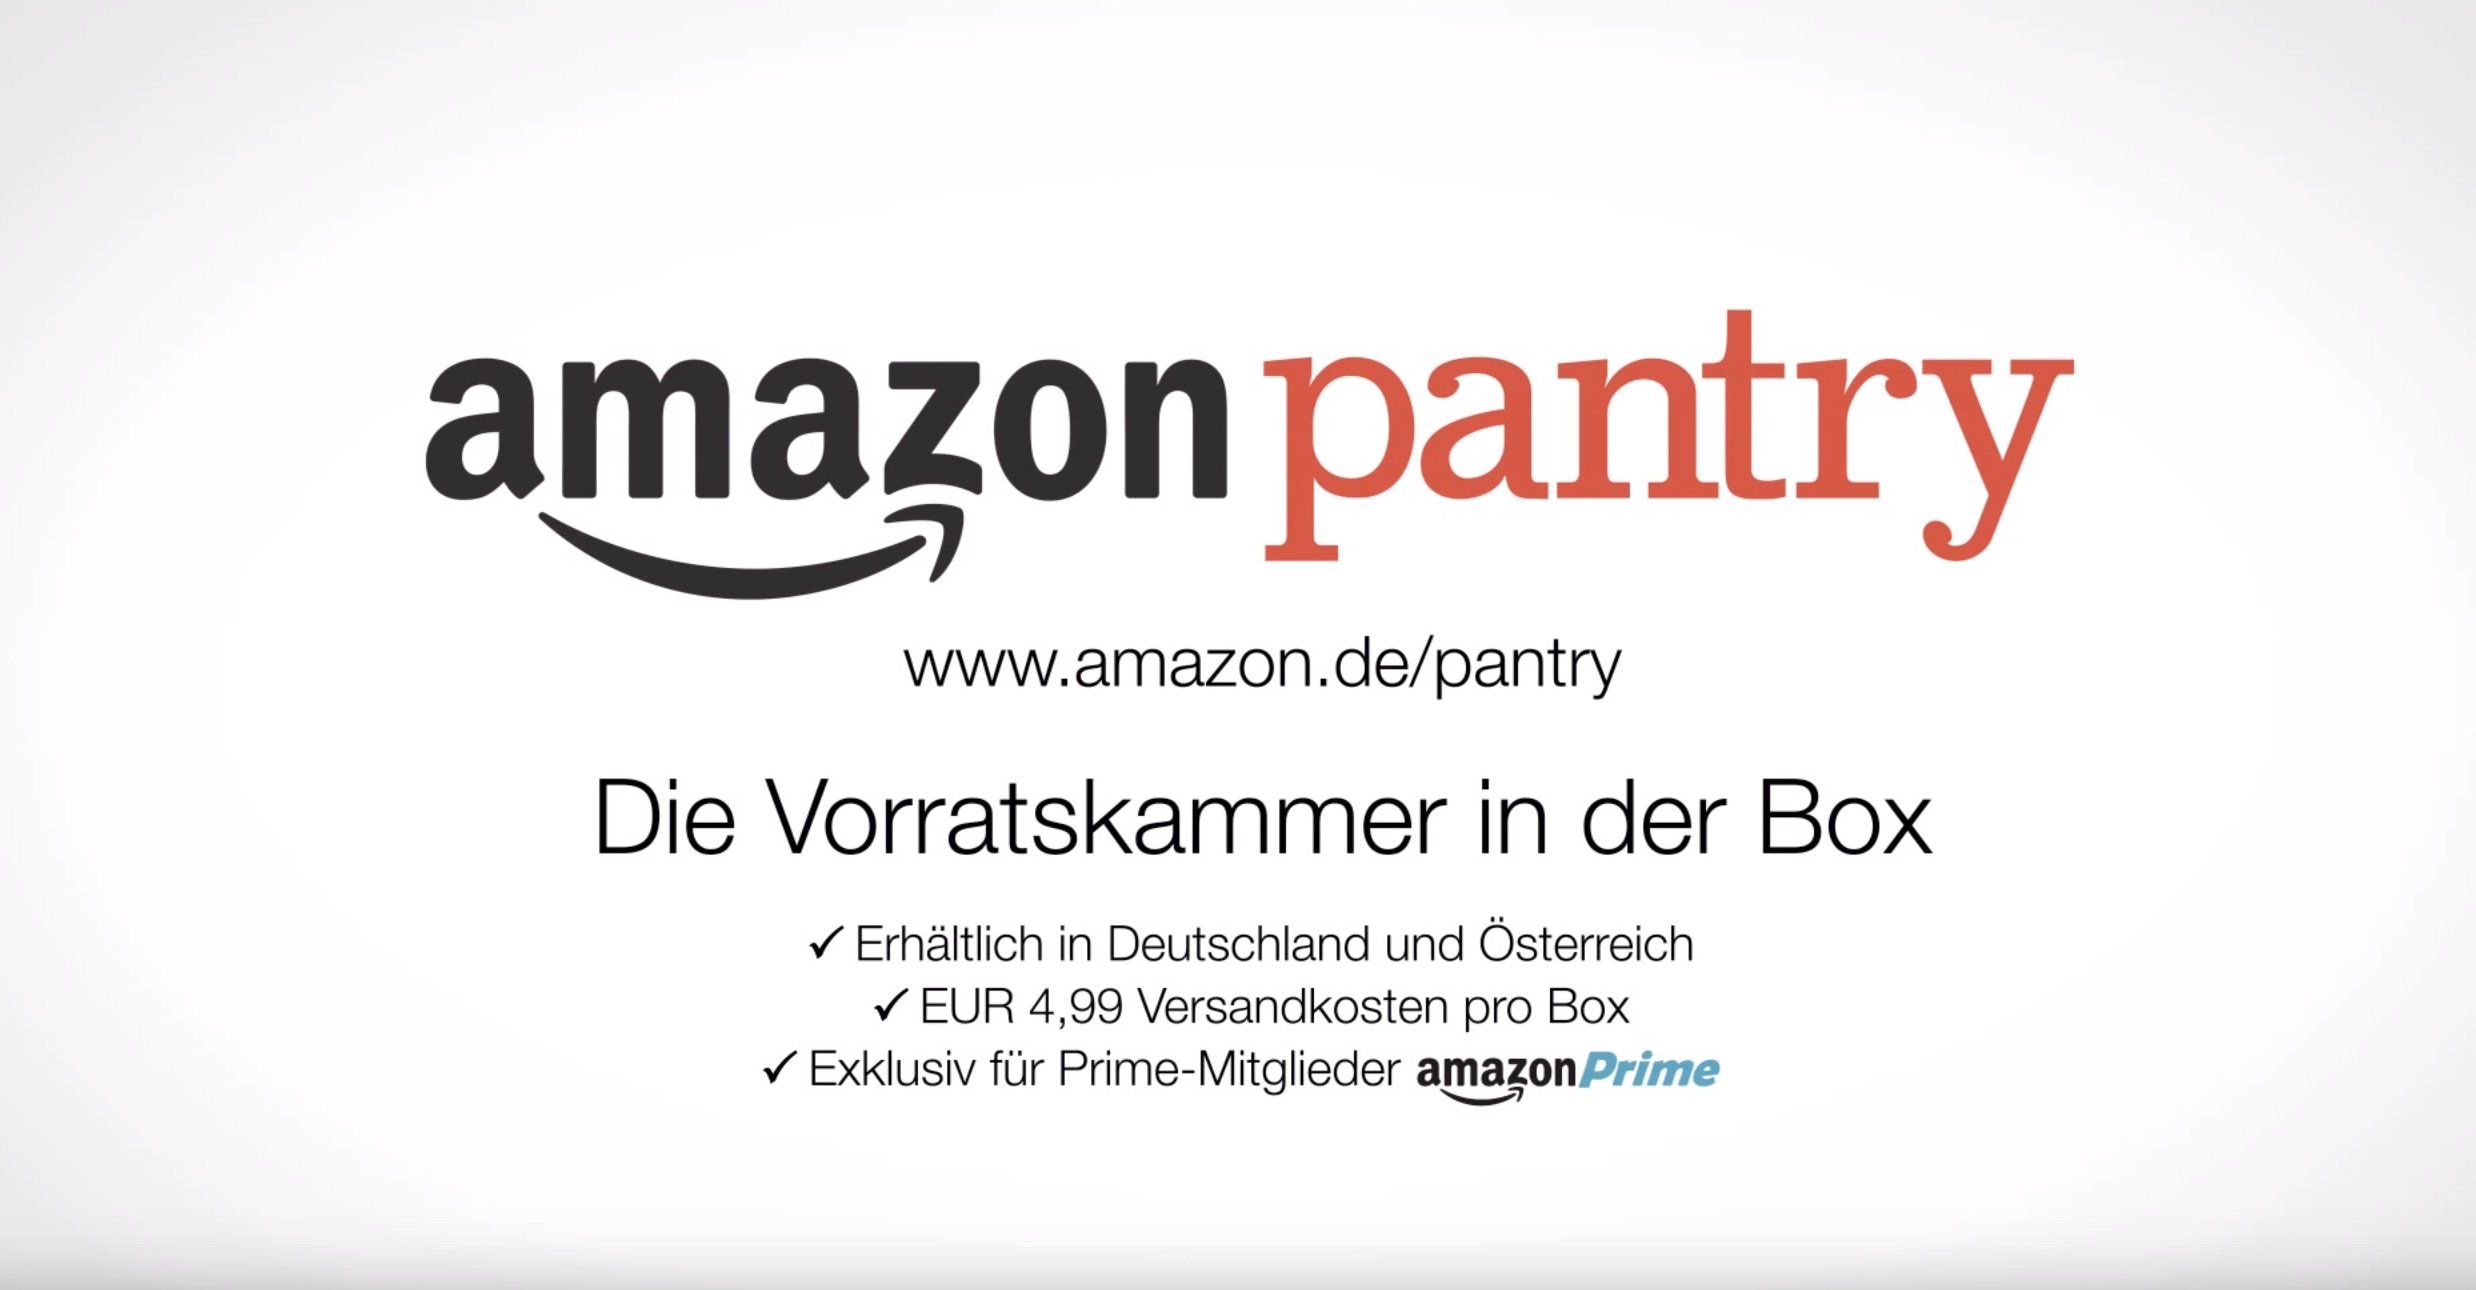 Amazon Pantry: Essen kaufen bei Amazon - die virtuelle Vorratskammer! 11